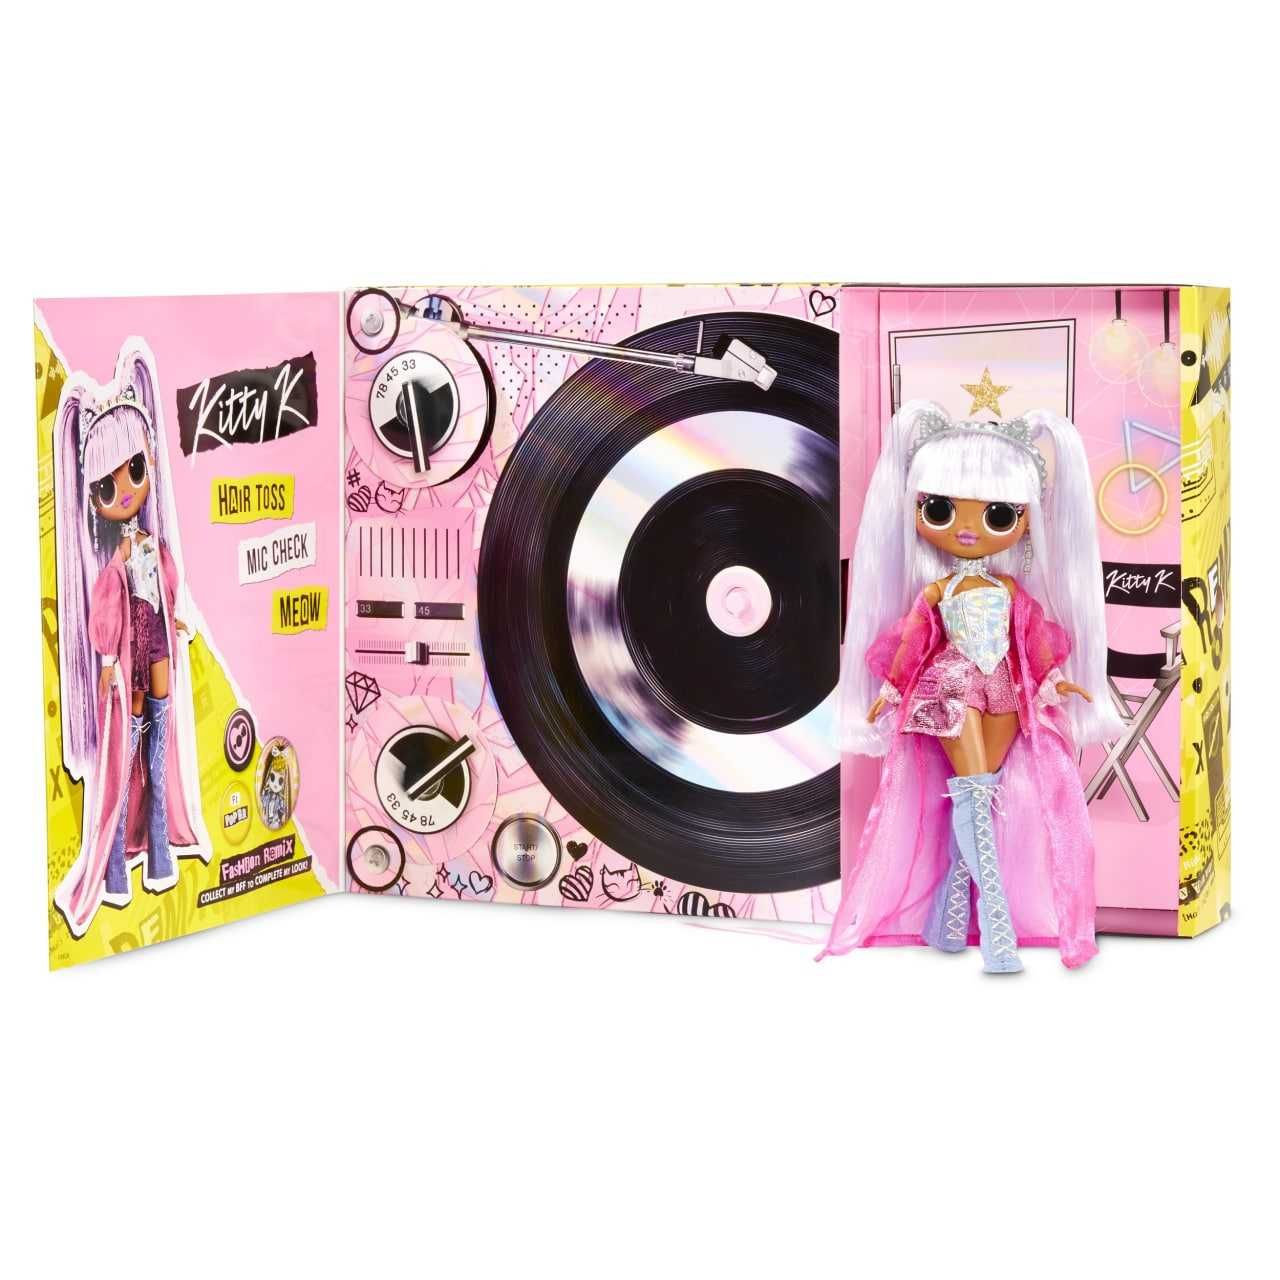 Кукла ЛОЛ ОМГ Ремикс Китти Кей LOL OMG Remix Kitty K Fashion Doll